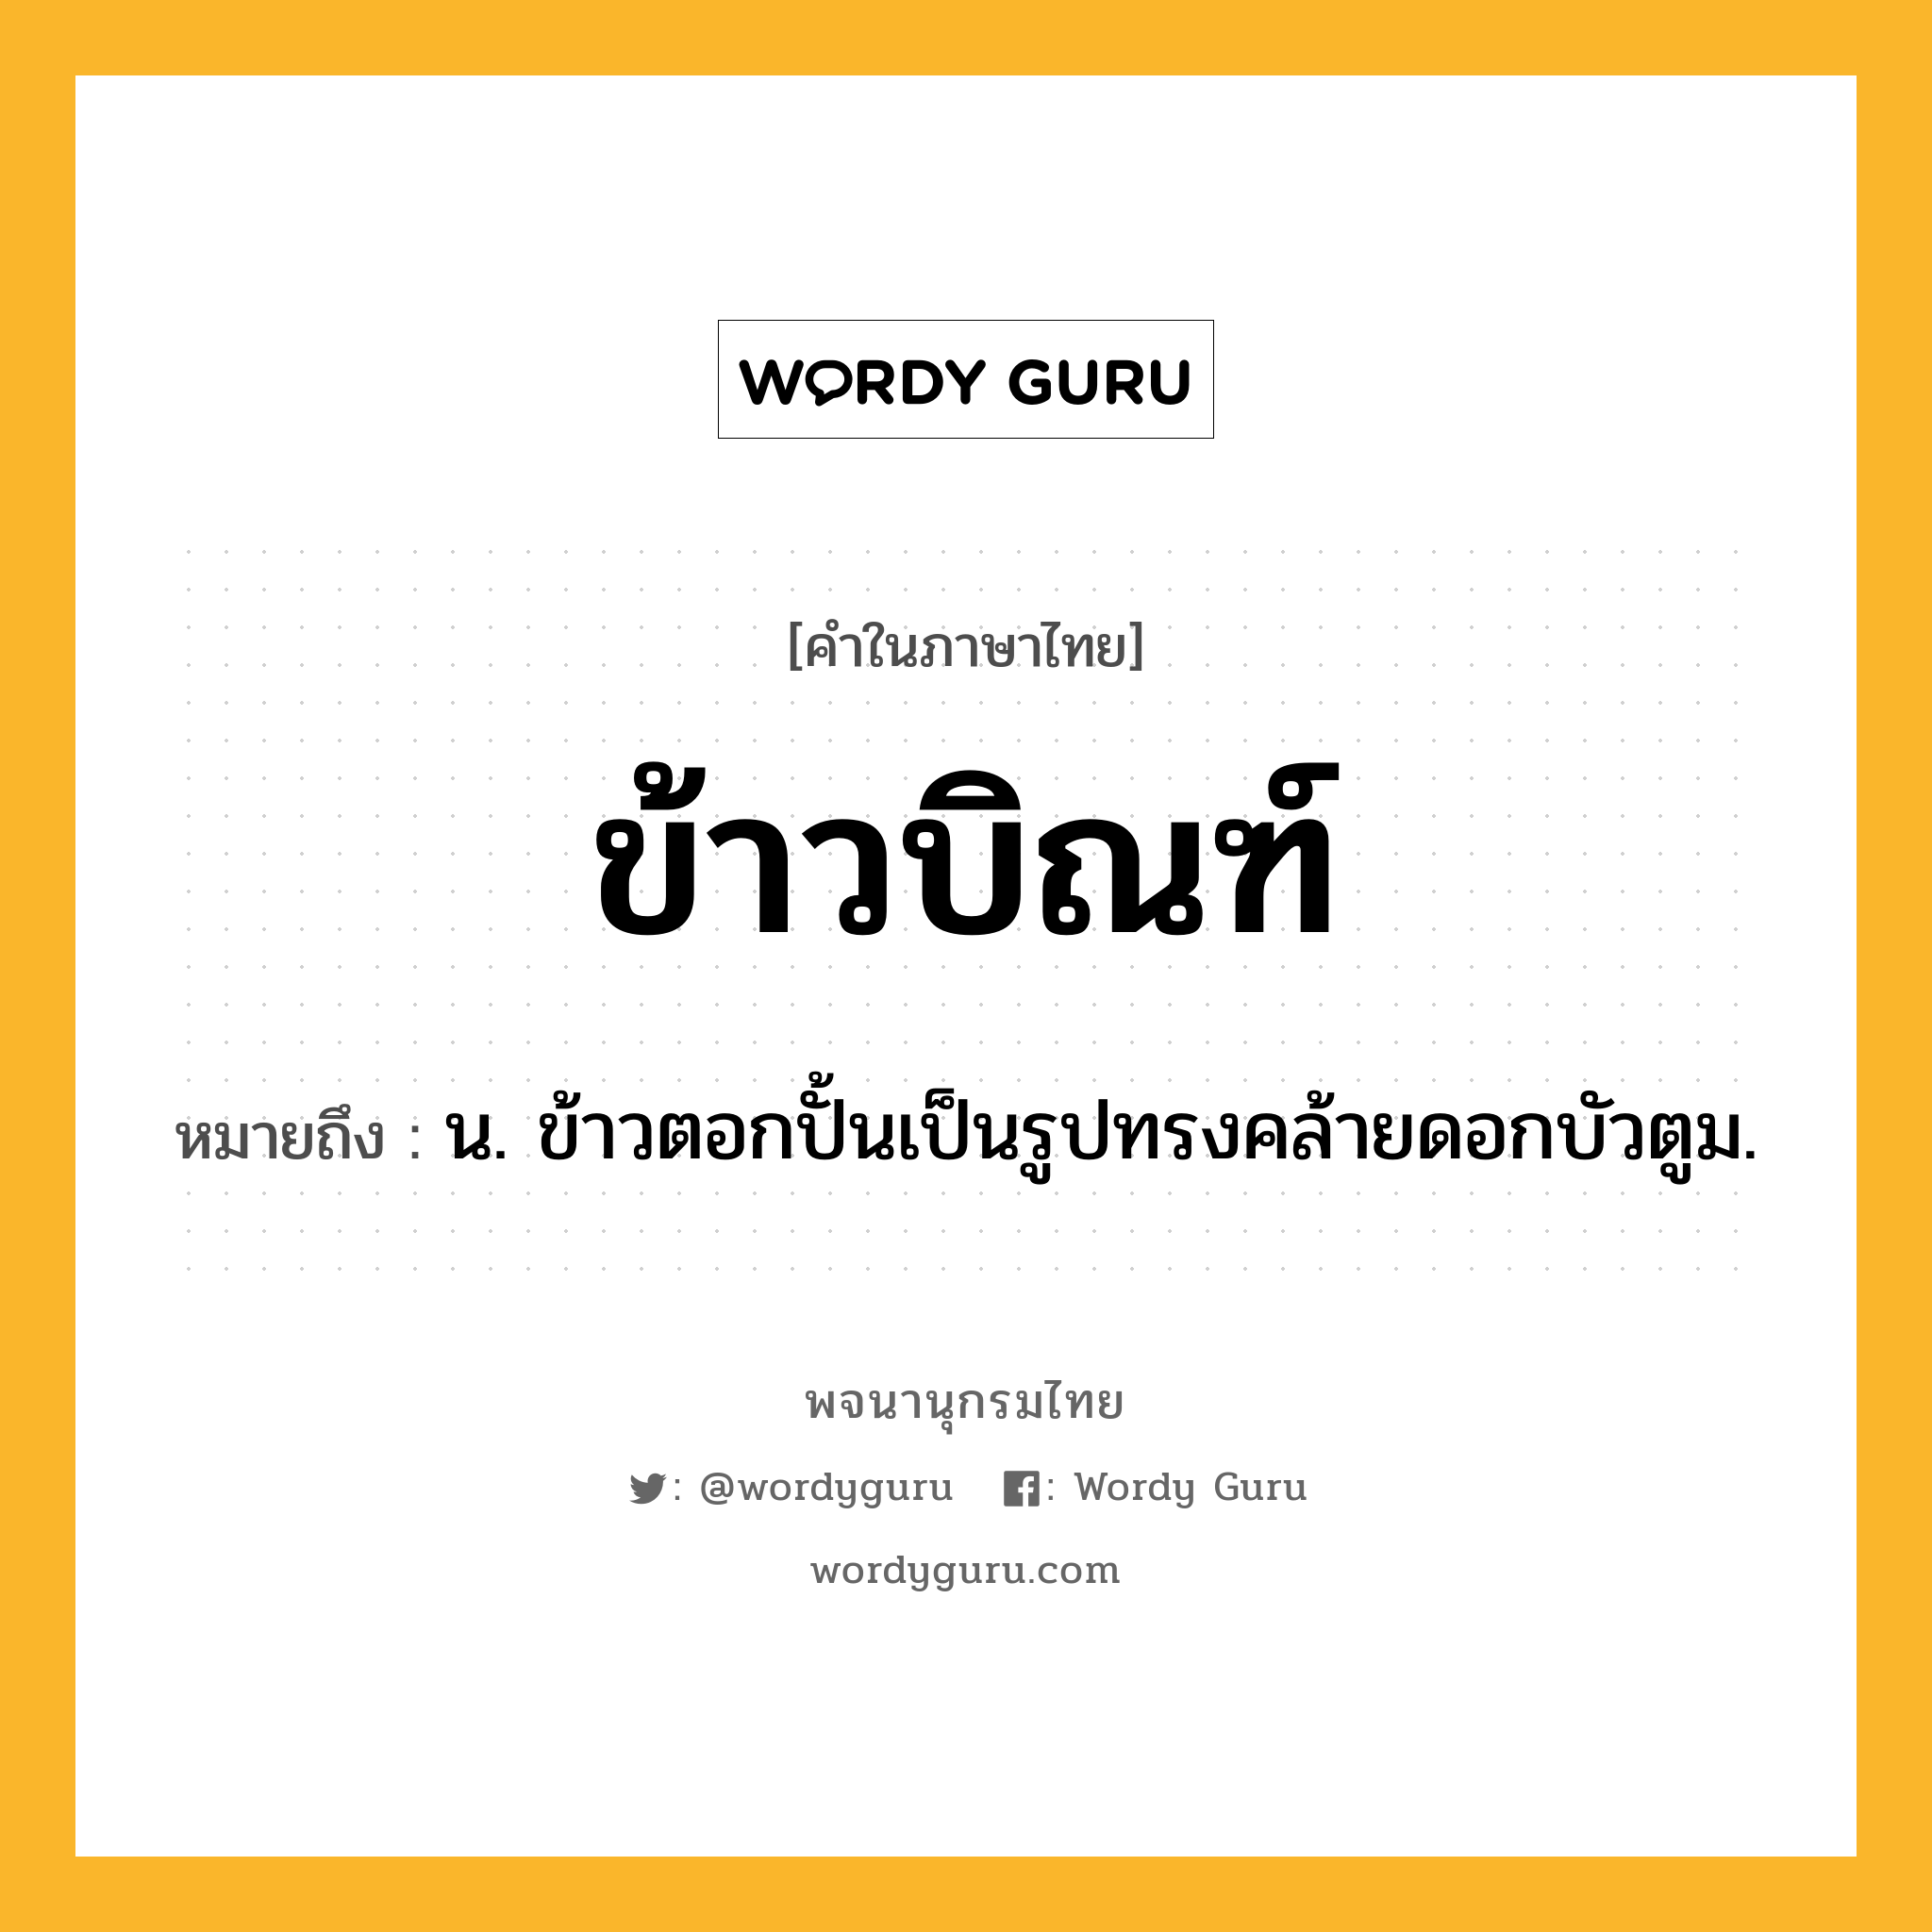 ข้าวบิณฑ์ ความหมาย หมายถึงอะไร?, คำในภาษาไทย ข้าวบิณฑ์ หมายถึง น. ข้าวตอกปั้นเป็นรูปทรงคล้ายดอกบัวตูม.